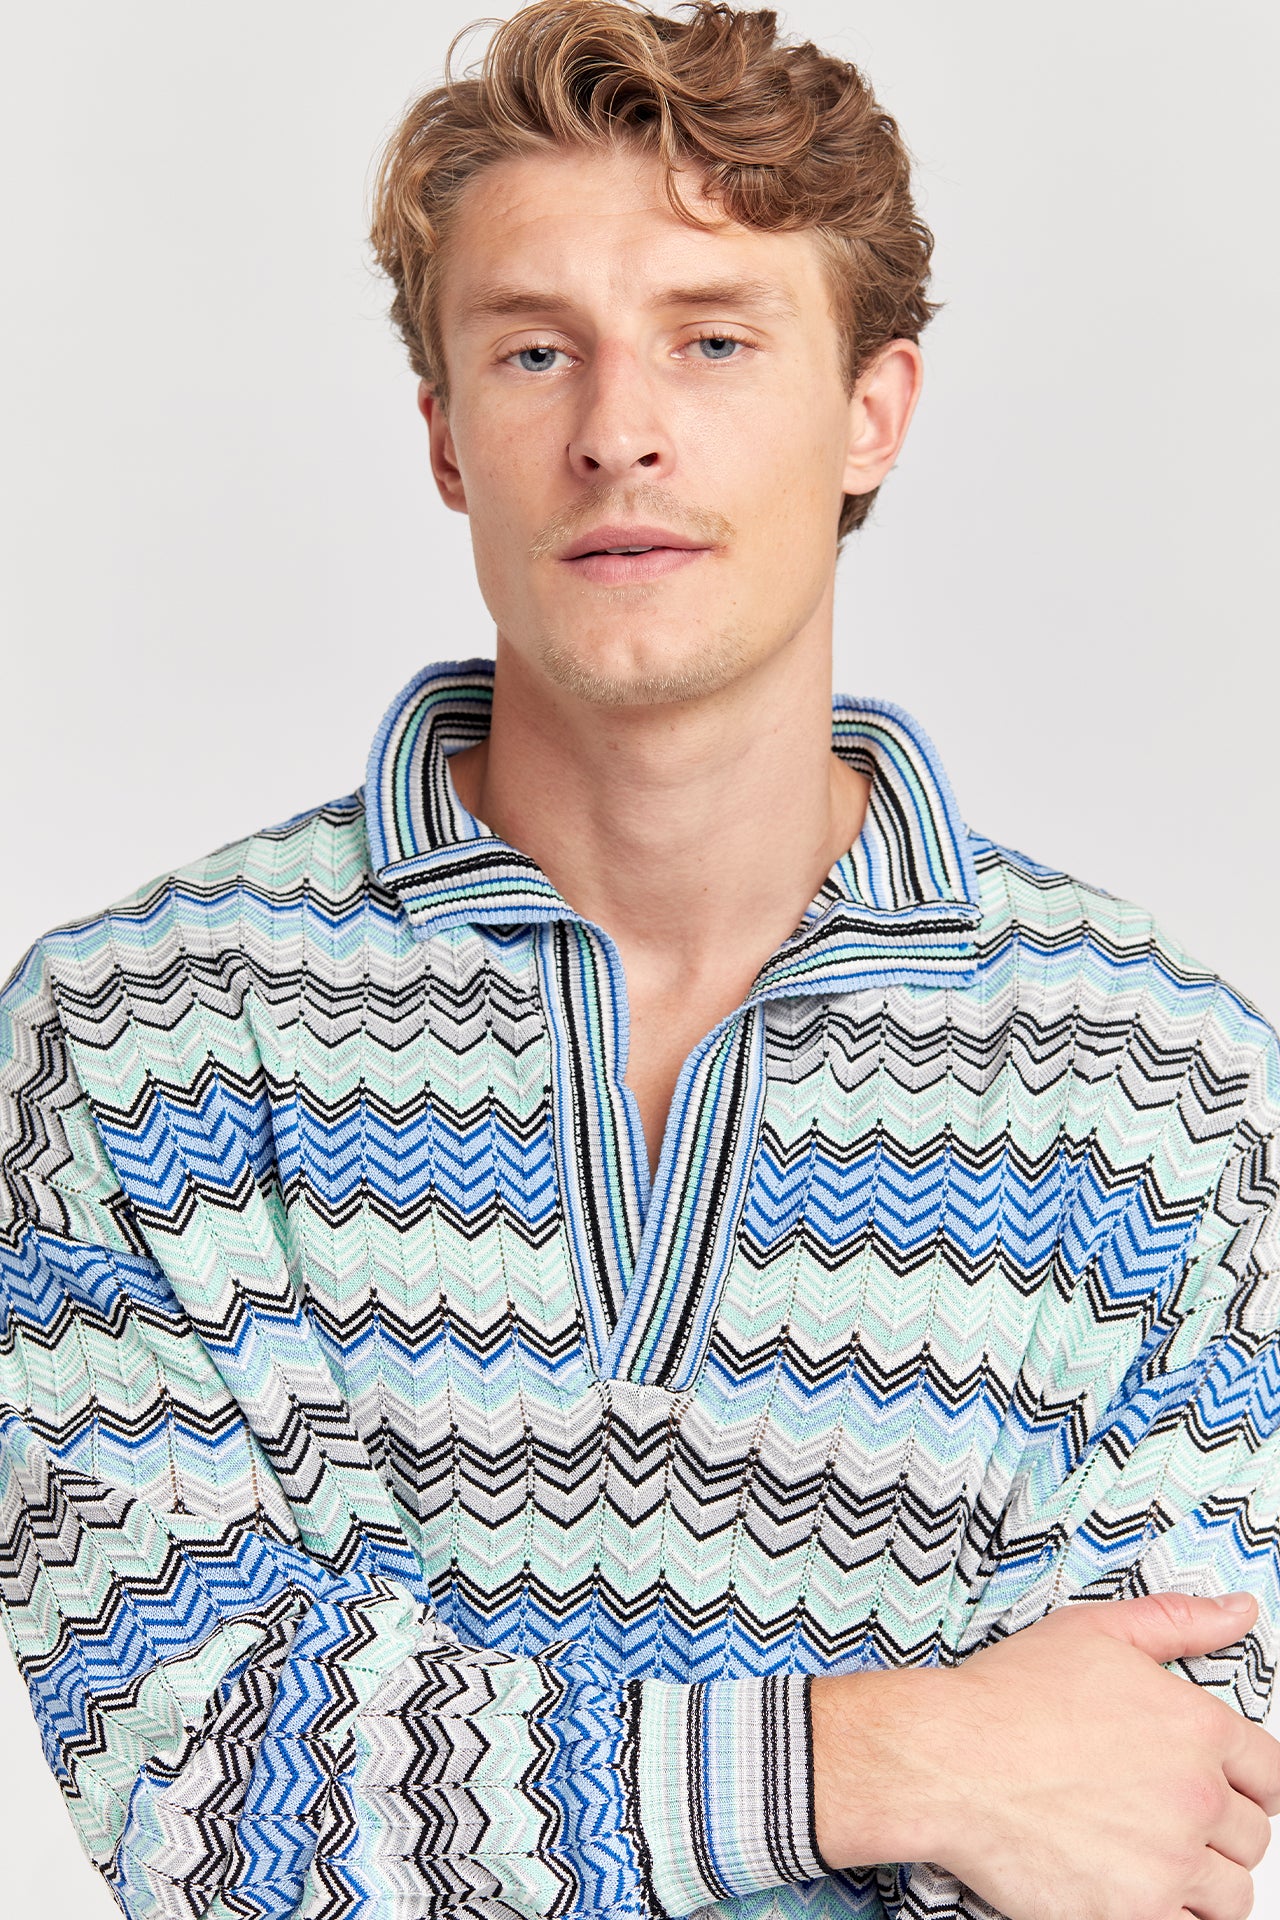 Ocean Knit Sweater